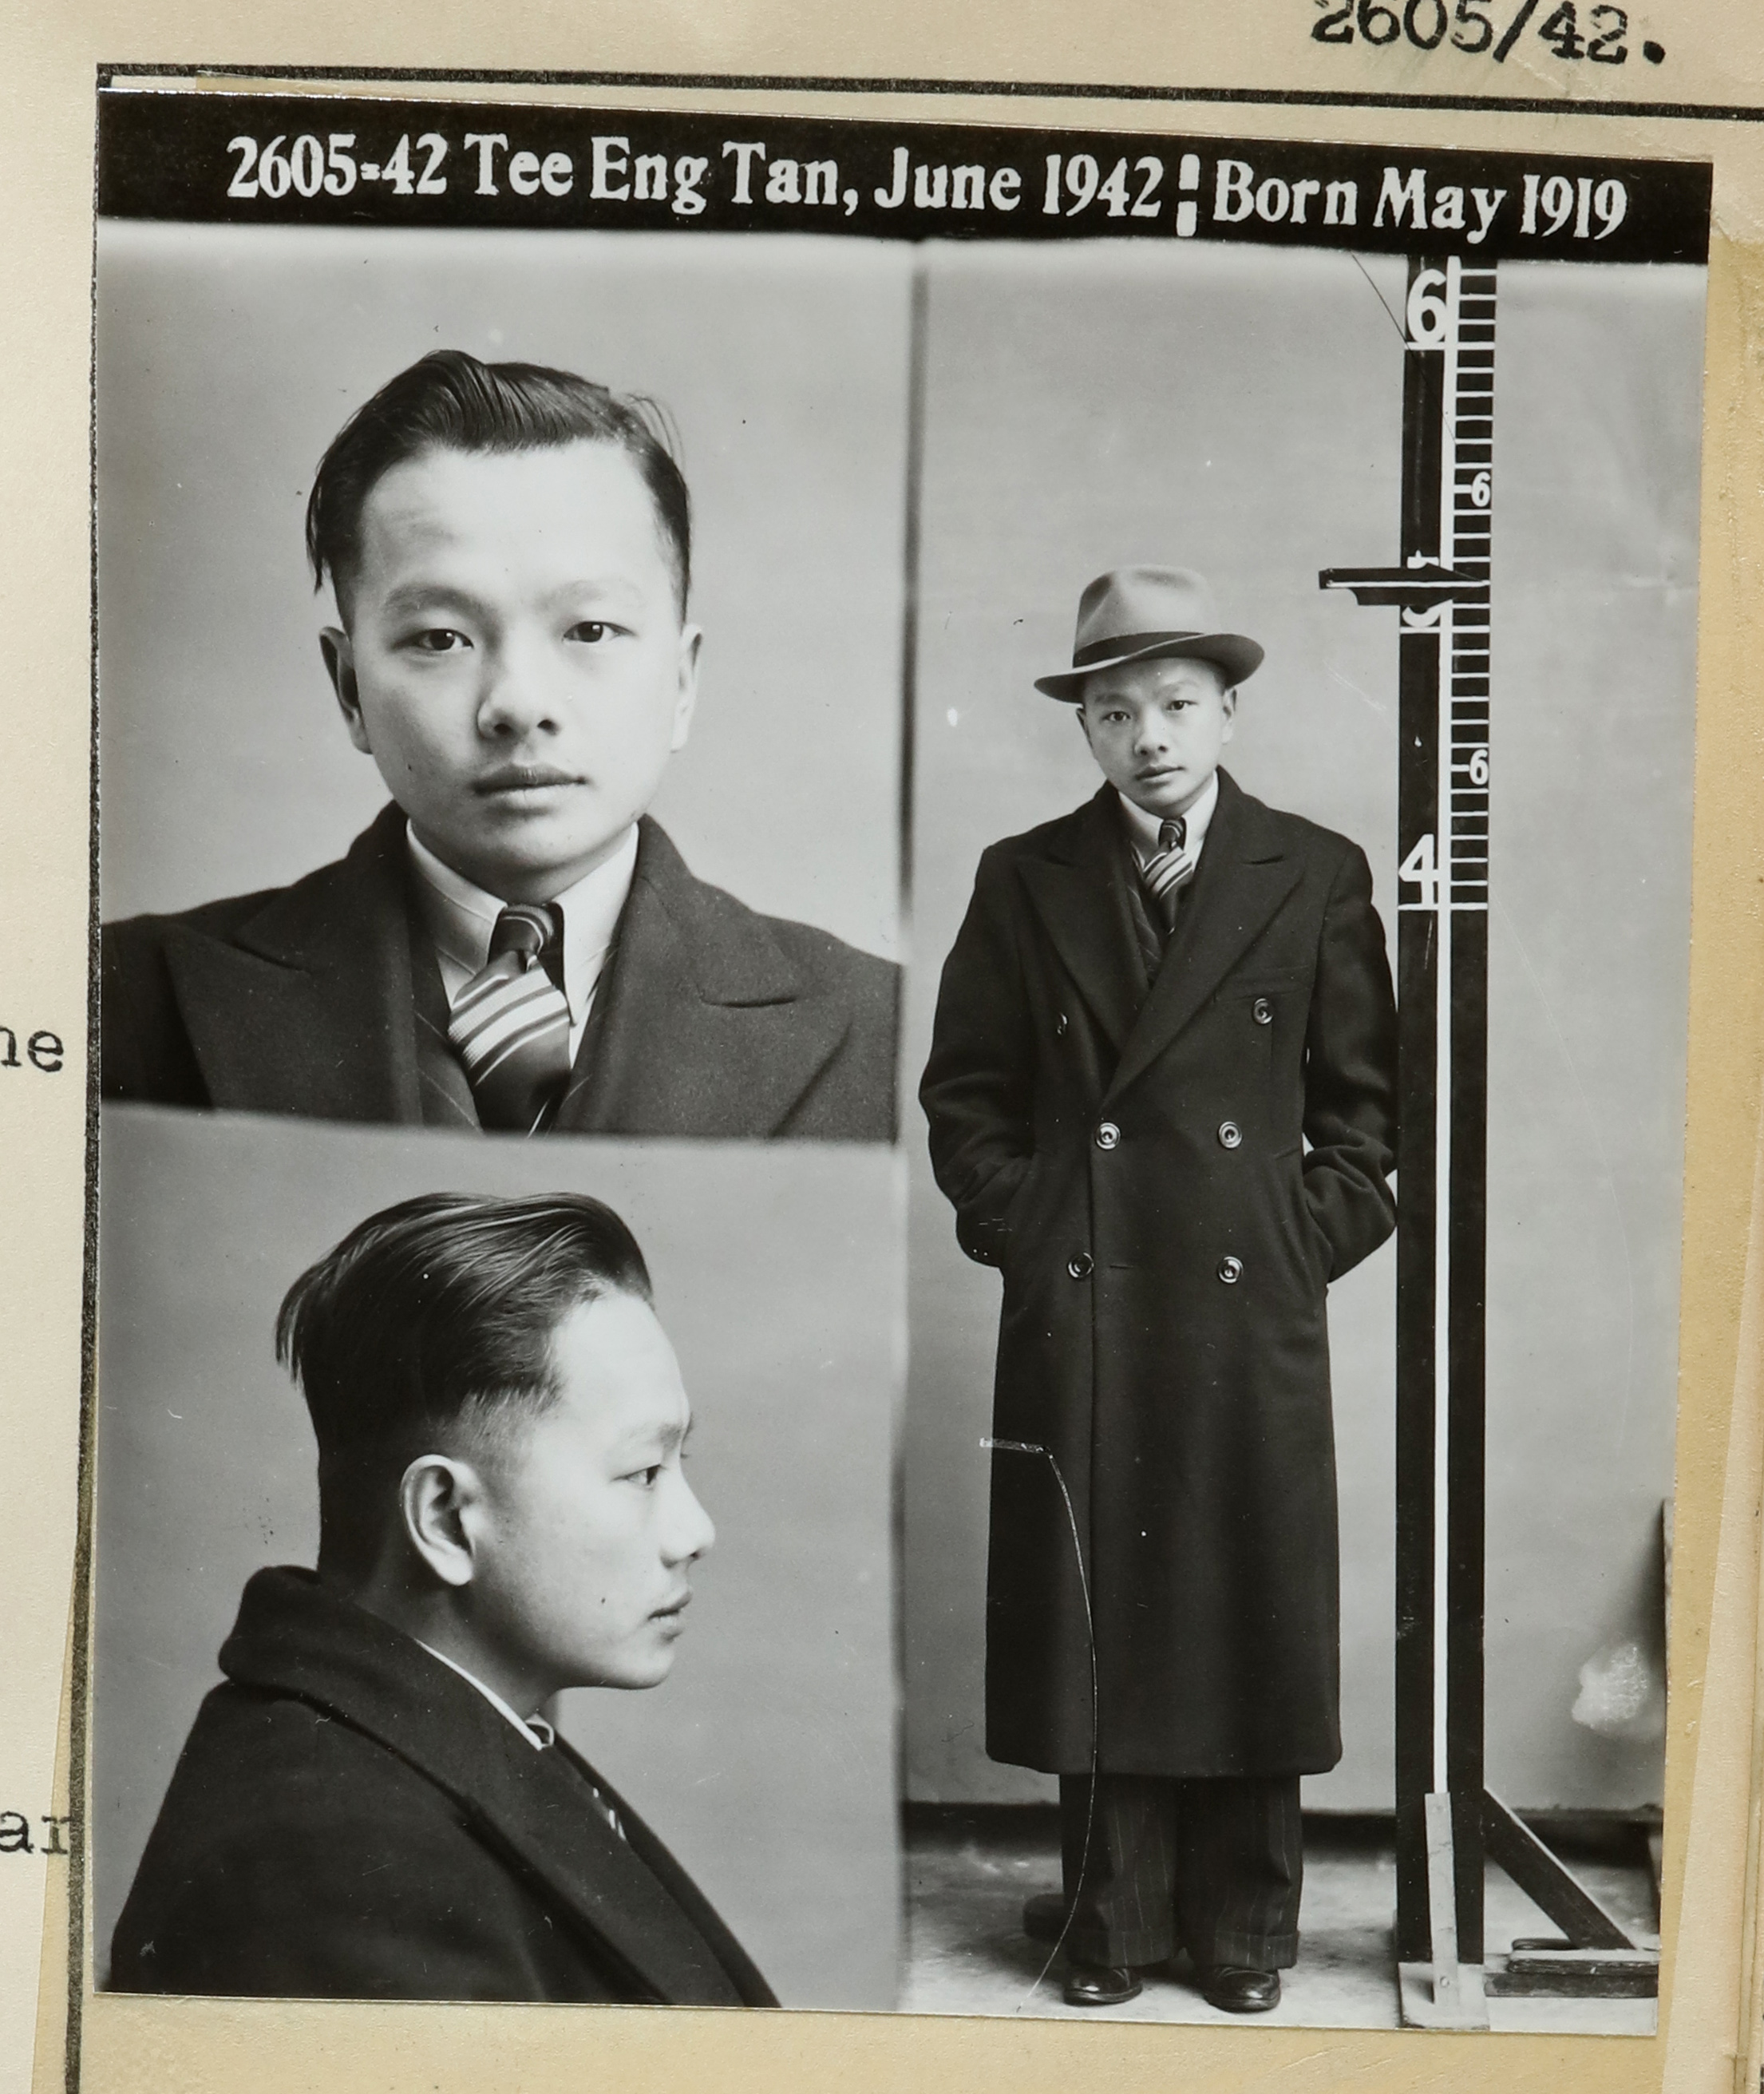 Tee Eng Tan June 1942